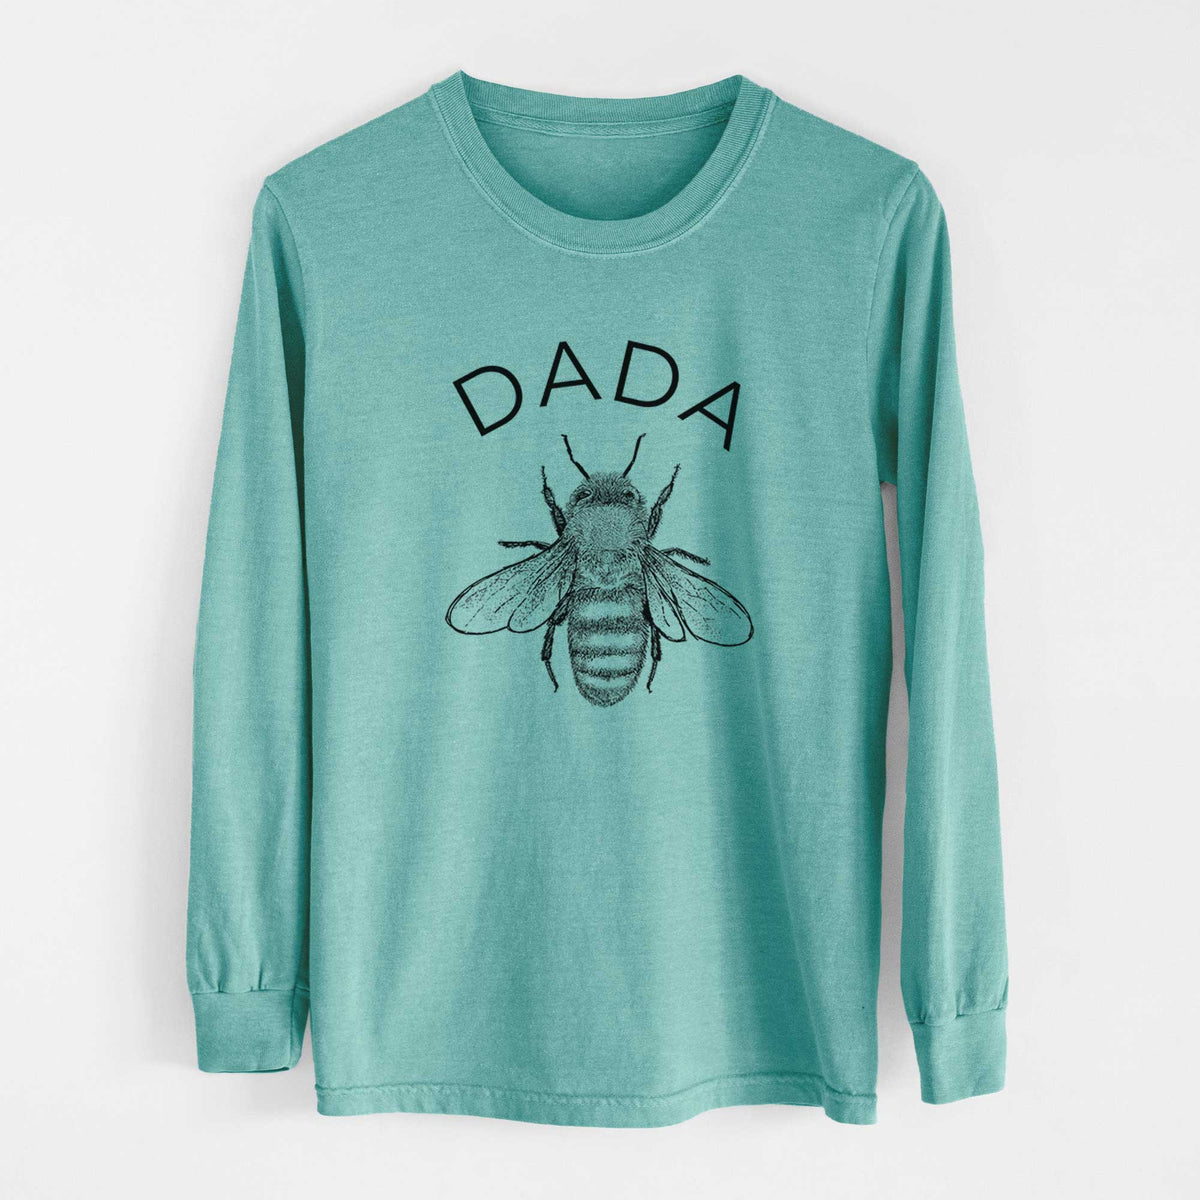 Dada Bee - Heavyweight 100% Cotton Long Sleeve